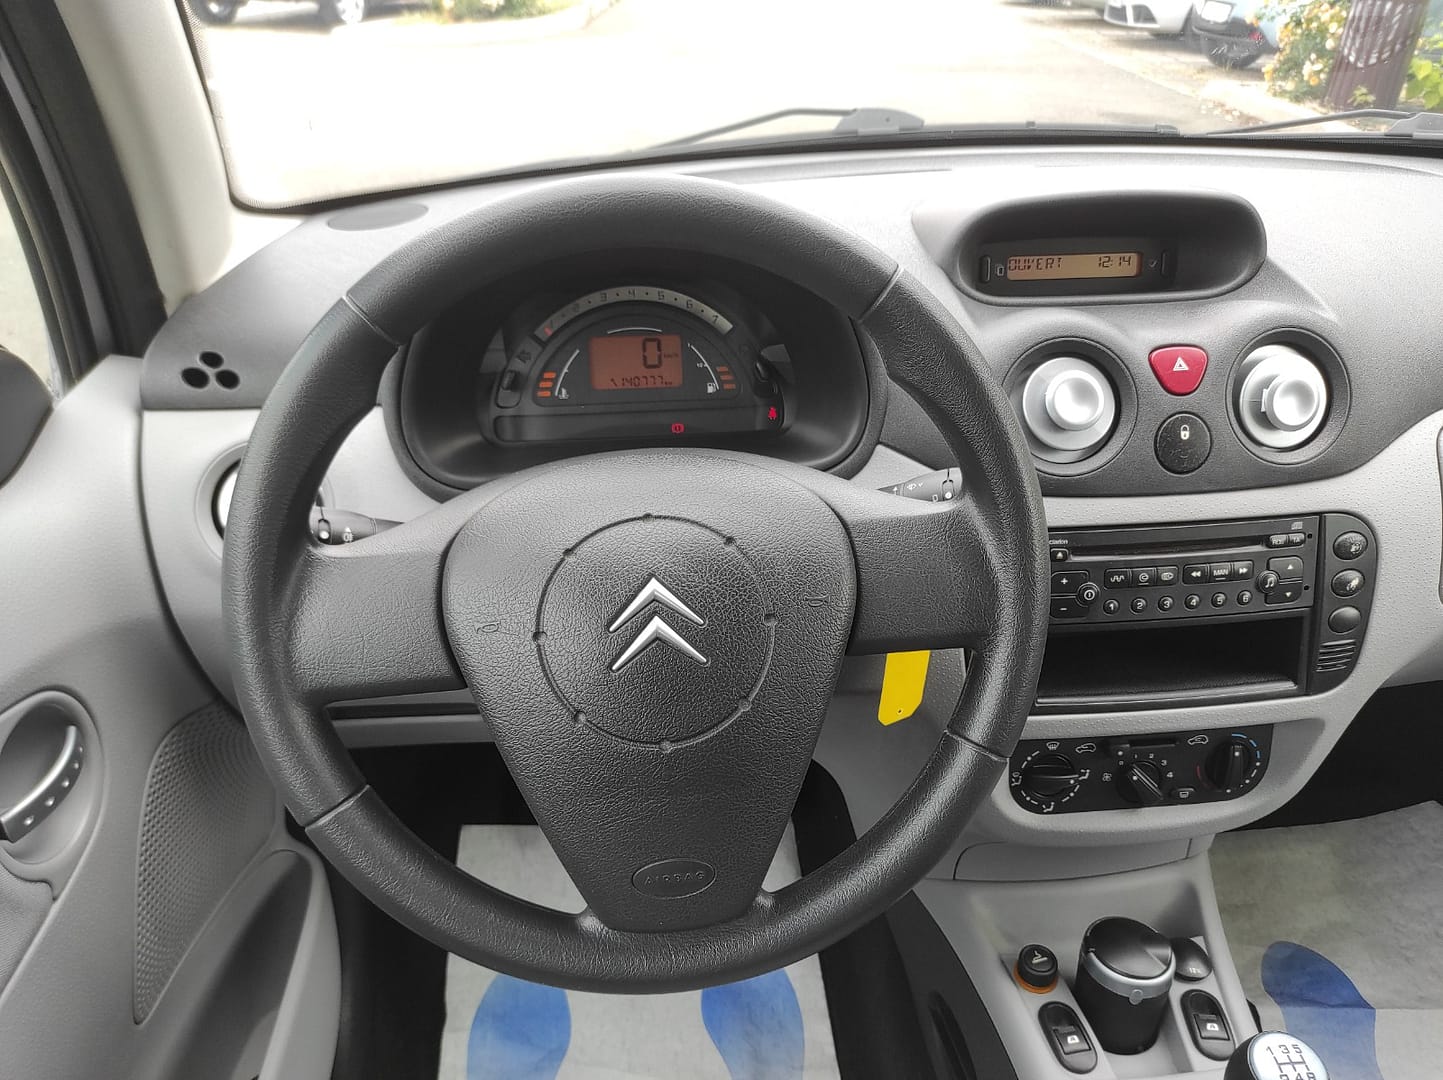 Citroën C3 2004 1.4 Pack Ambiance 5P - Automatix Motors - Voiture Occasion - Achat Voiture - Vente Voiture - Reprise Voiture